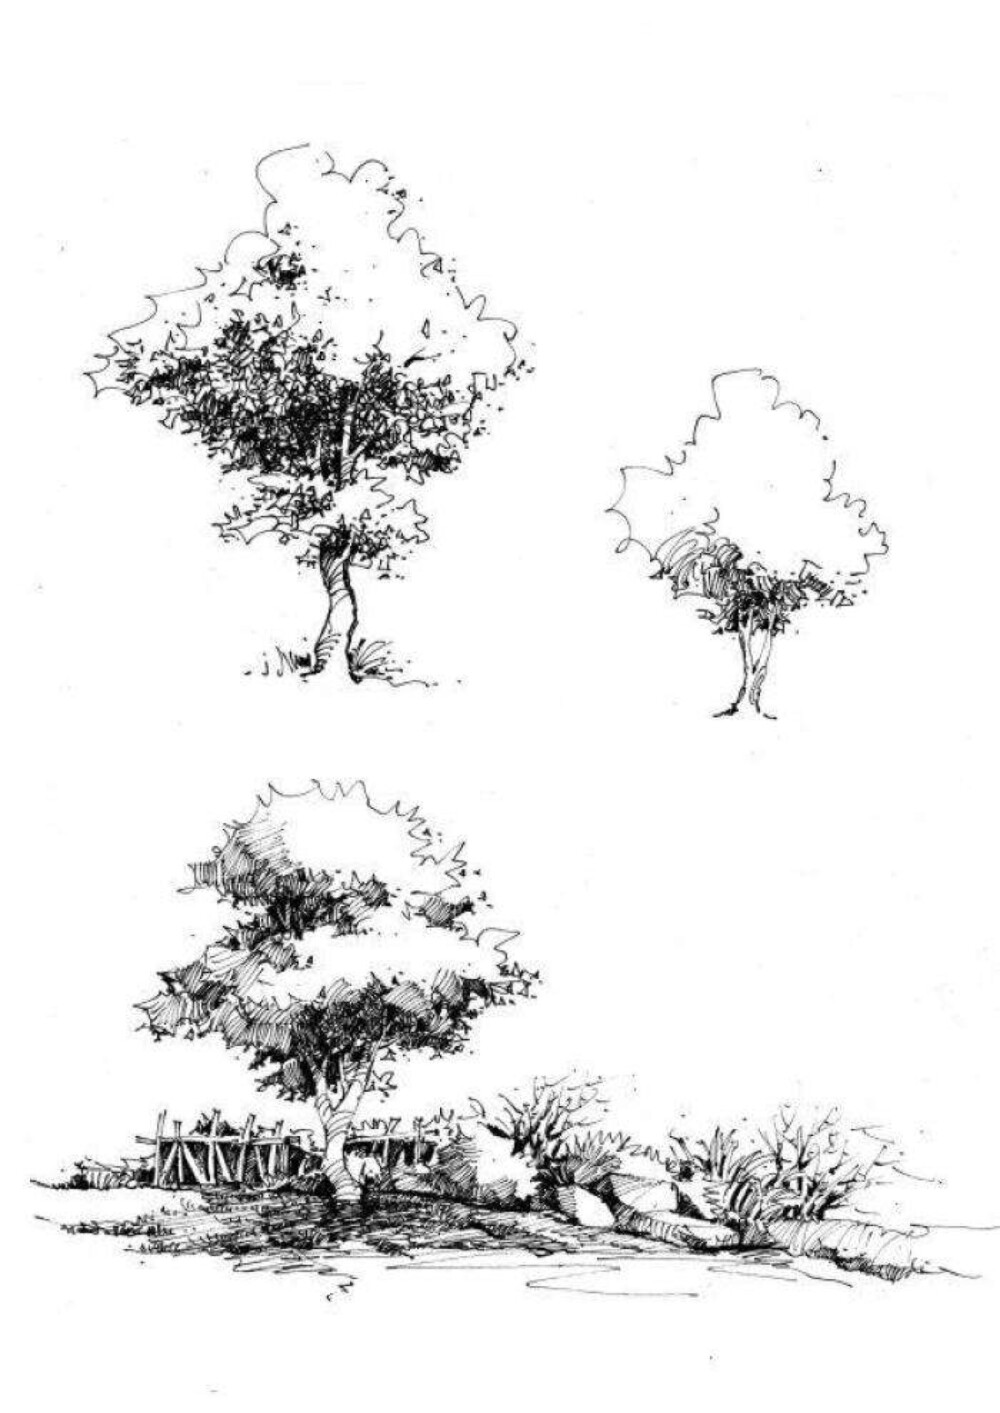 大树手绘线稿图片